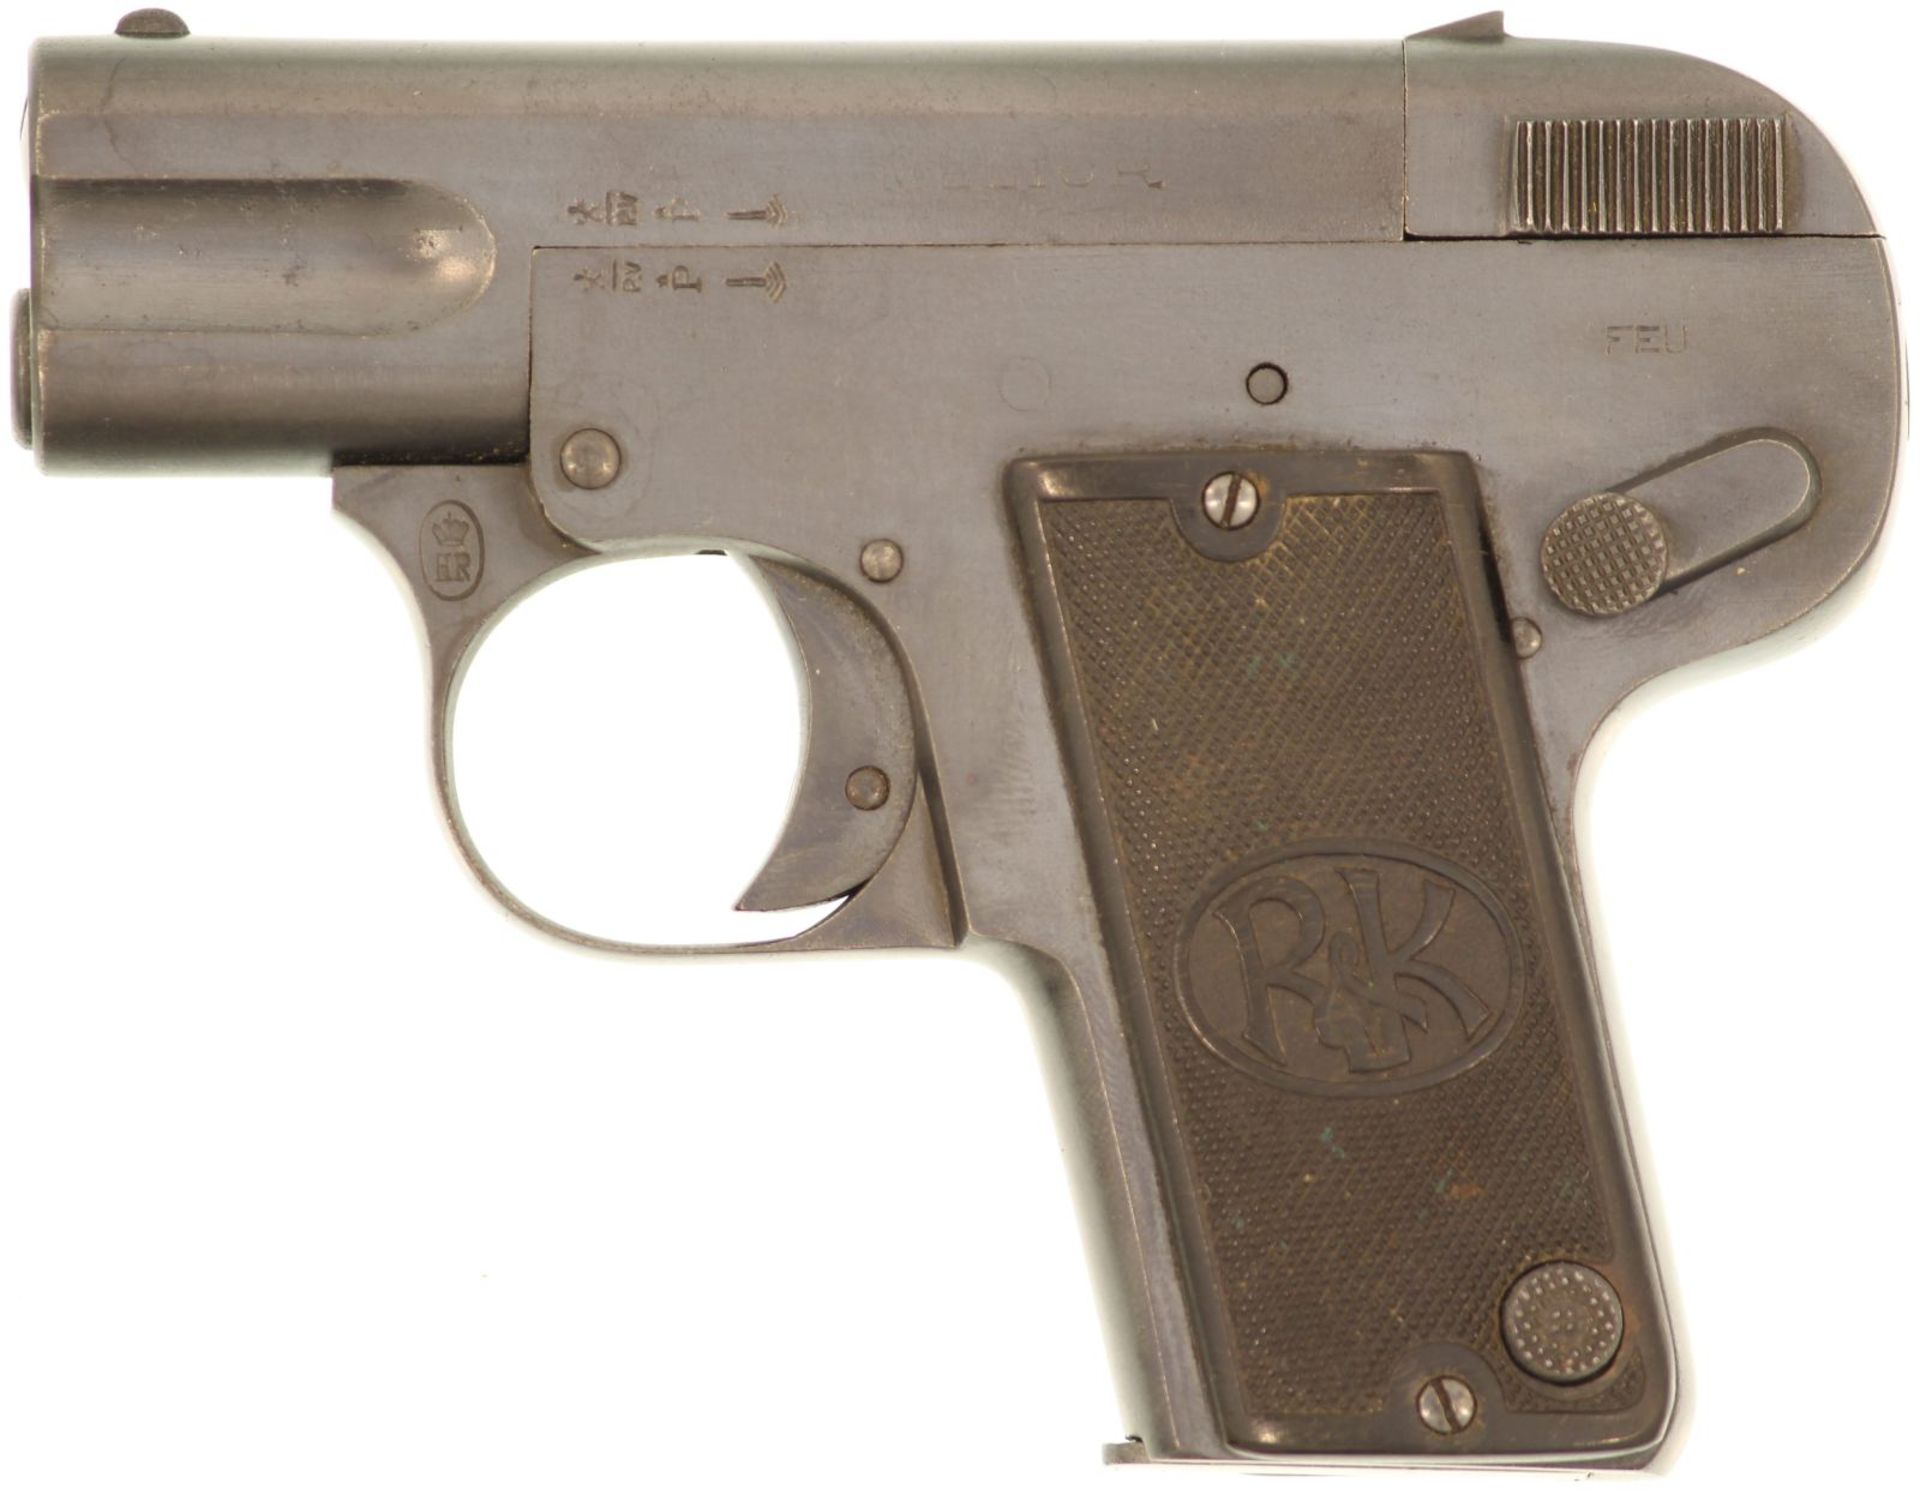 Taschenpistole Melior 1.Modell Kal. 6.35mm. Streichbrünierte Waffe, von der Konstruktion her eine